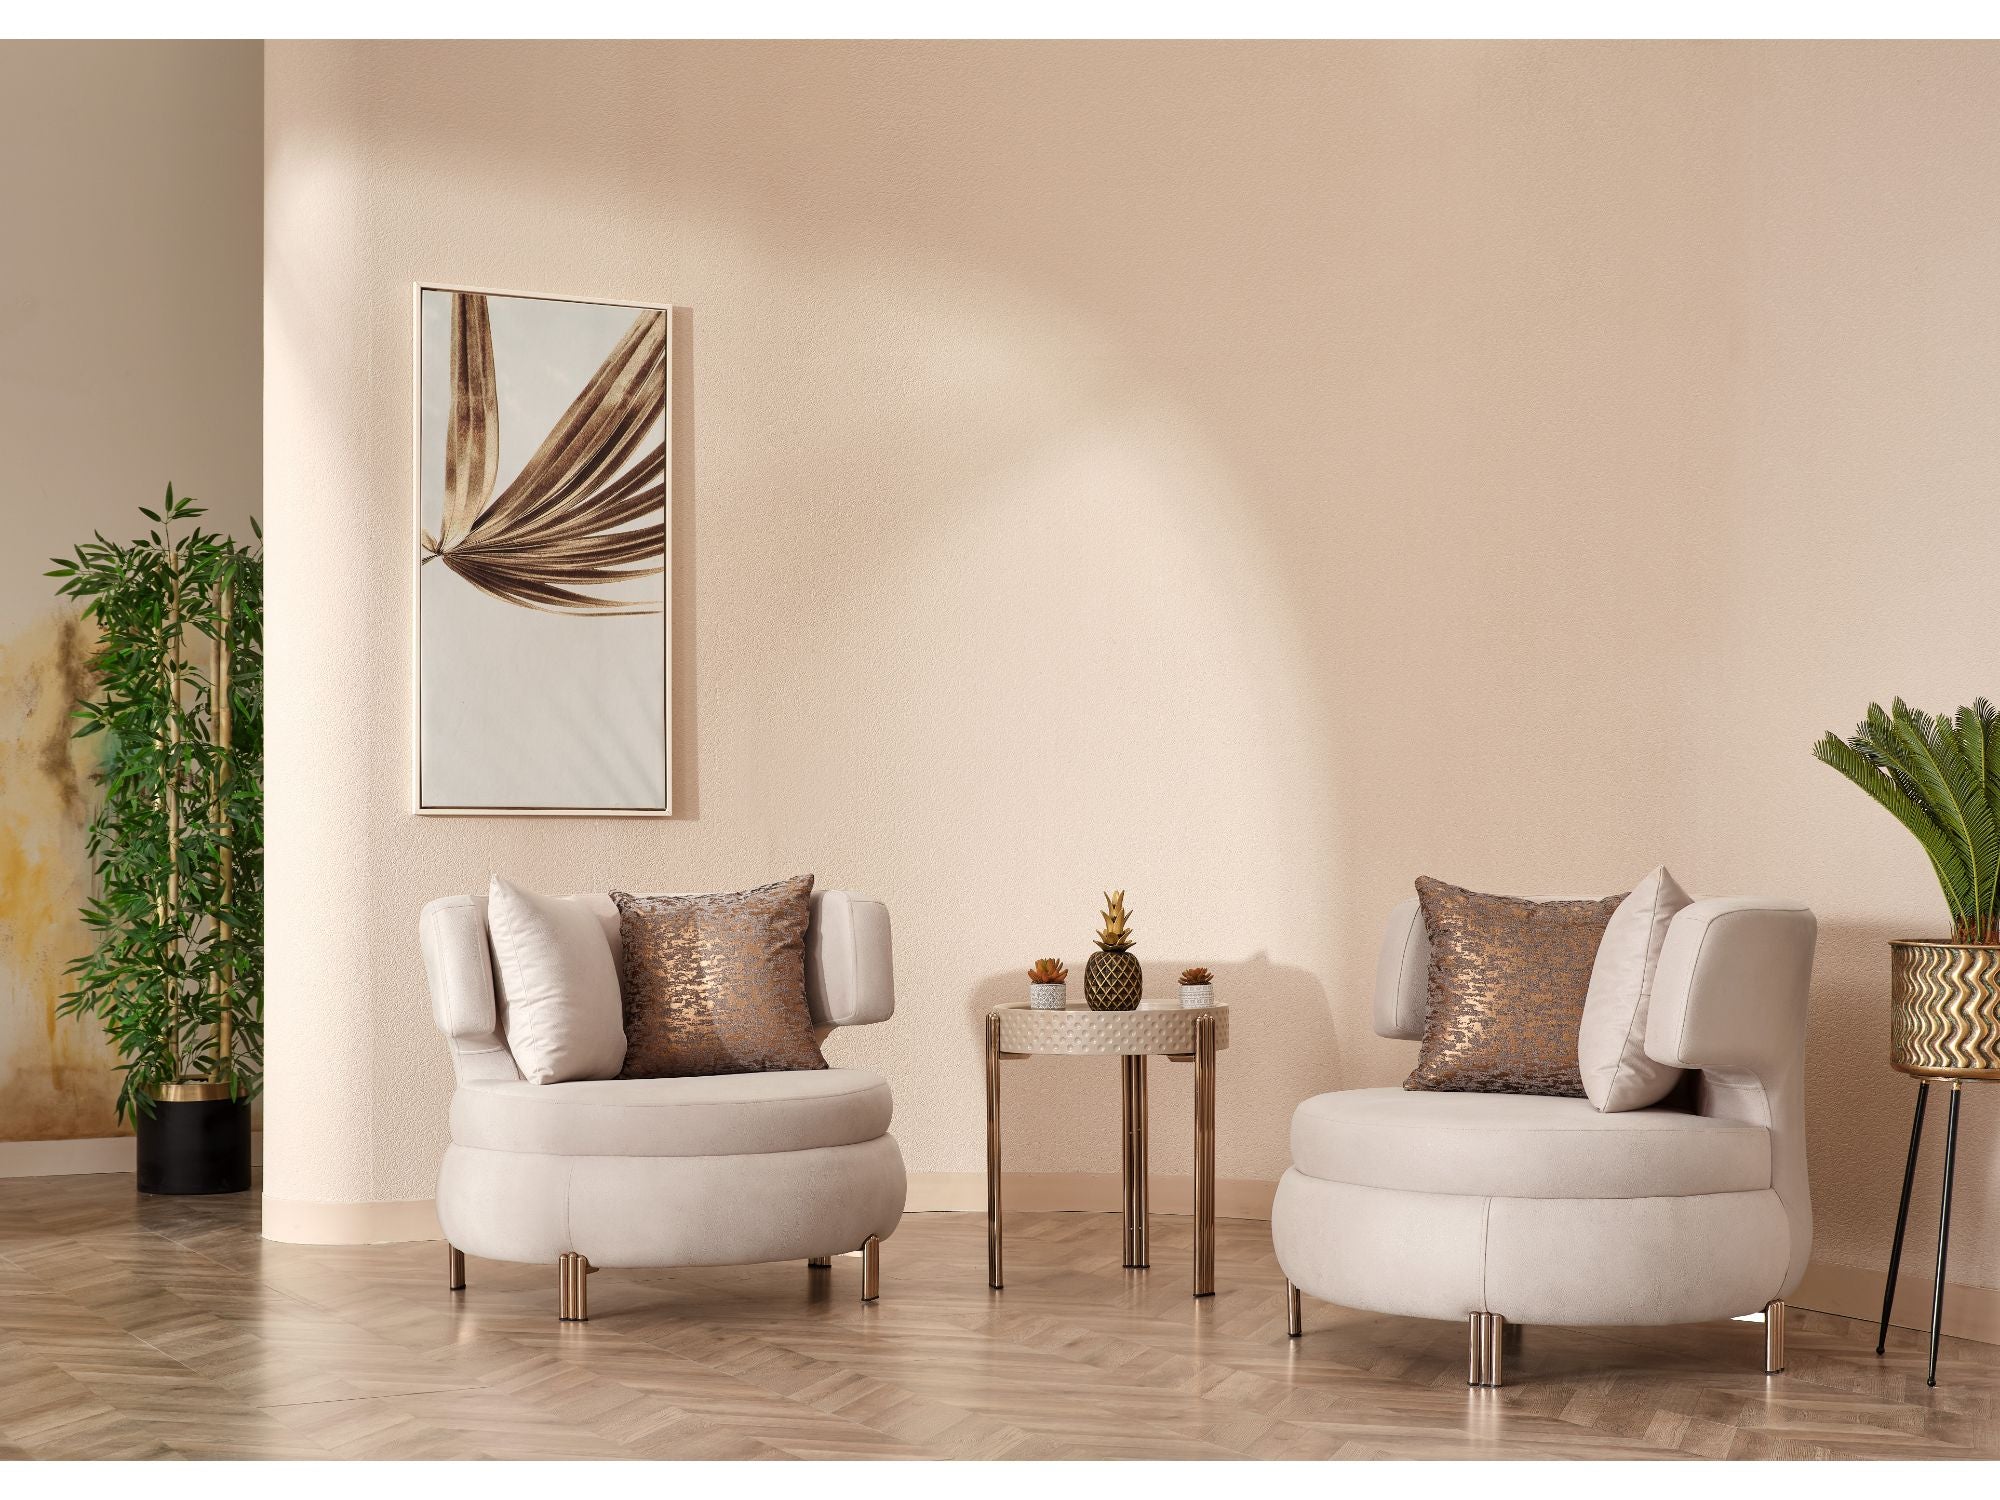 Paris Stationary Livingroom (2 Sofa & 2 Chair) Cream